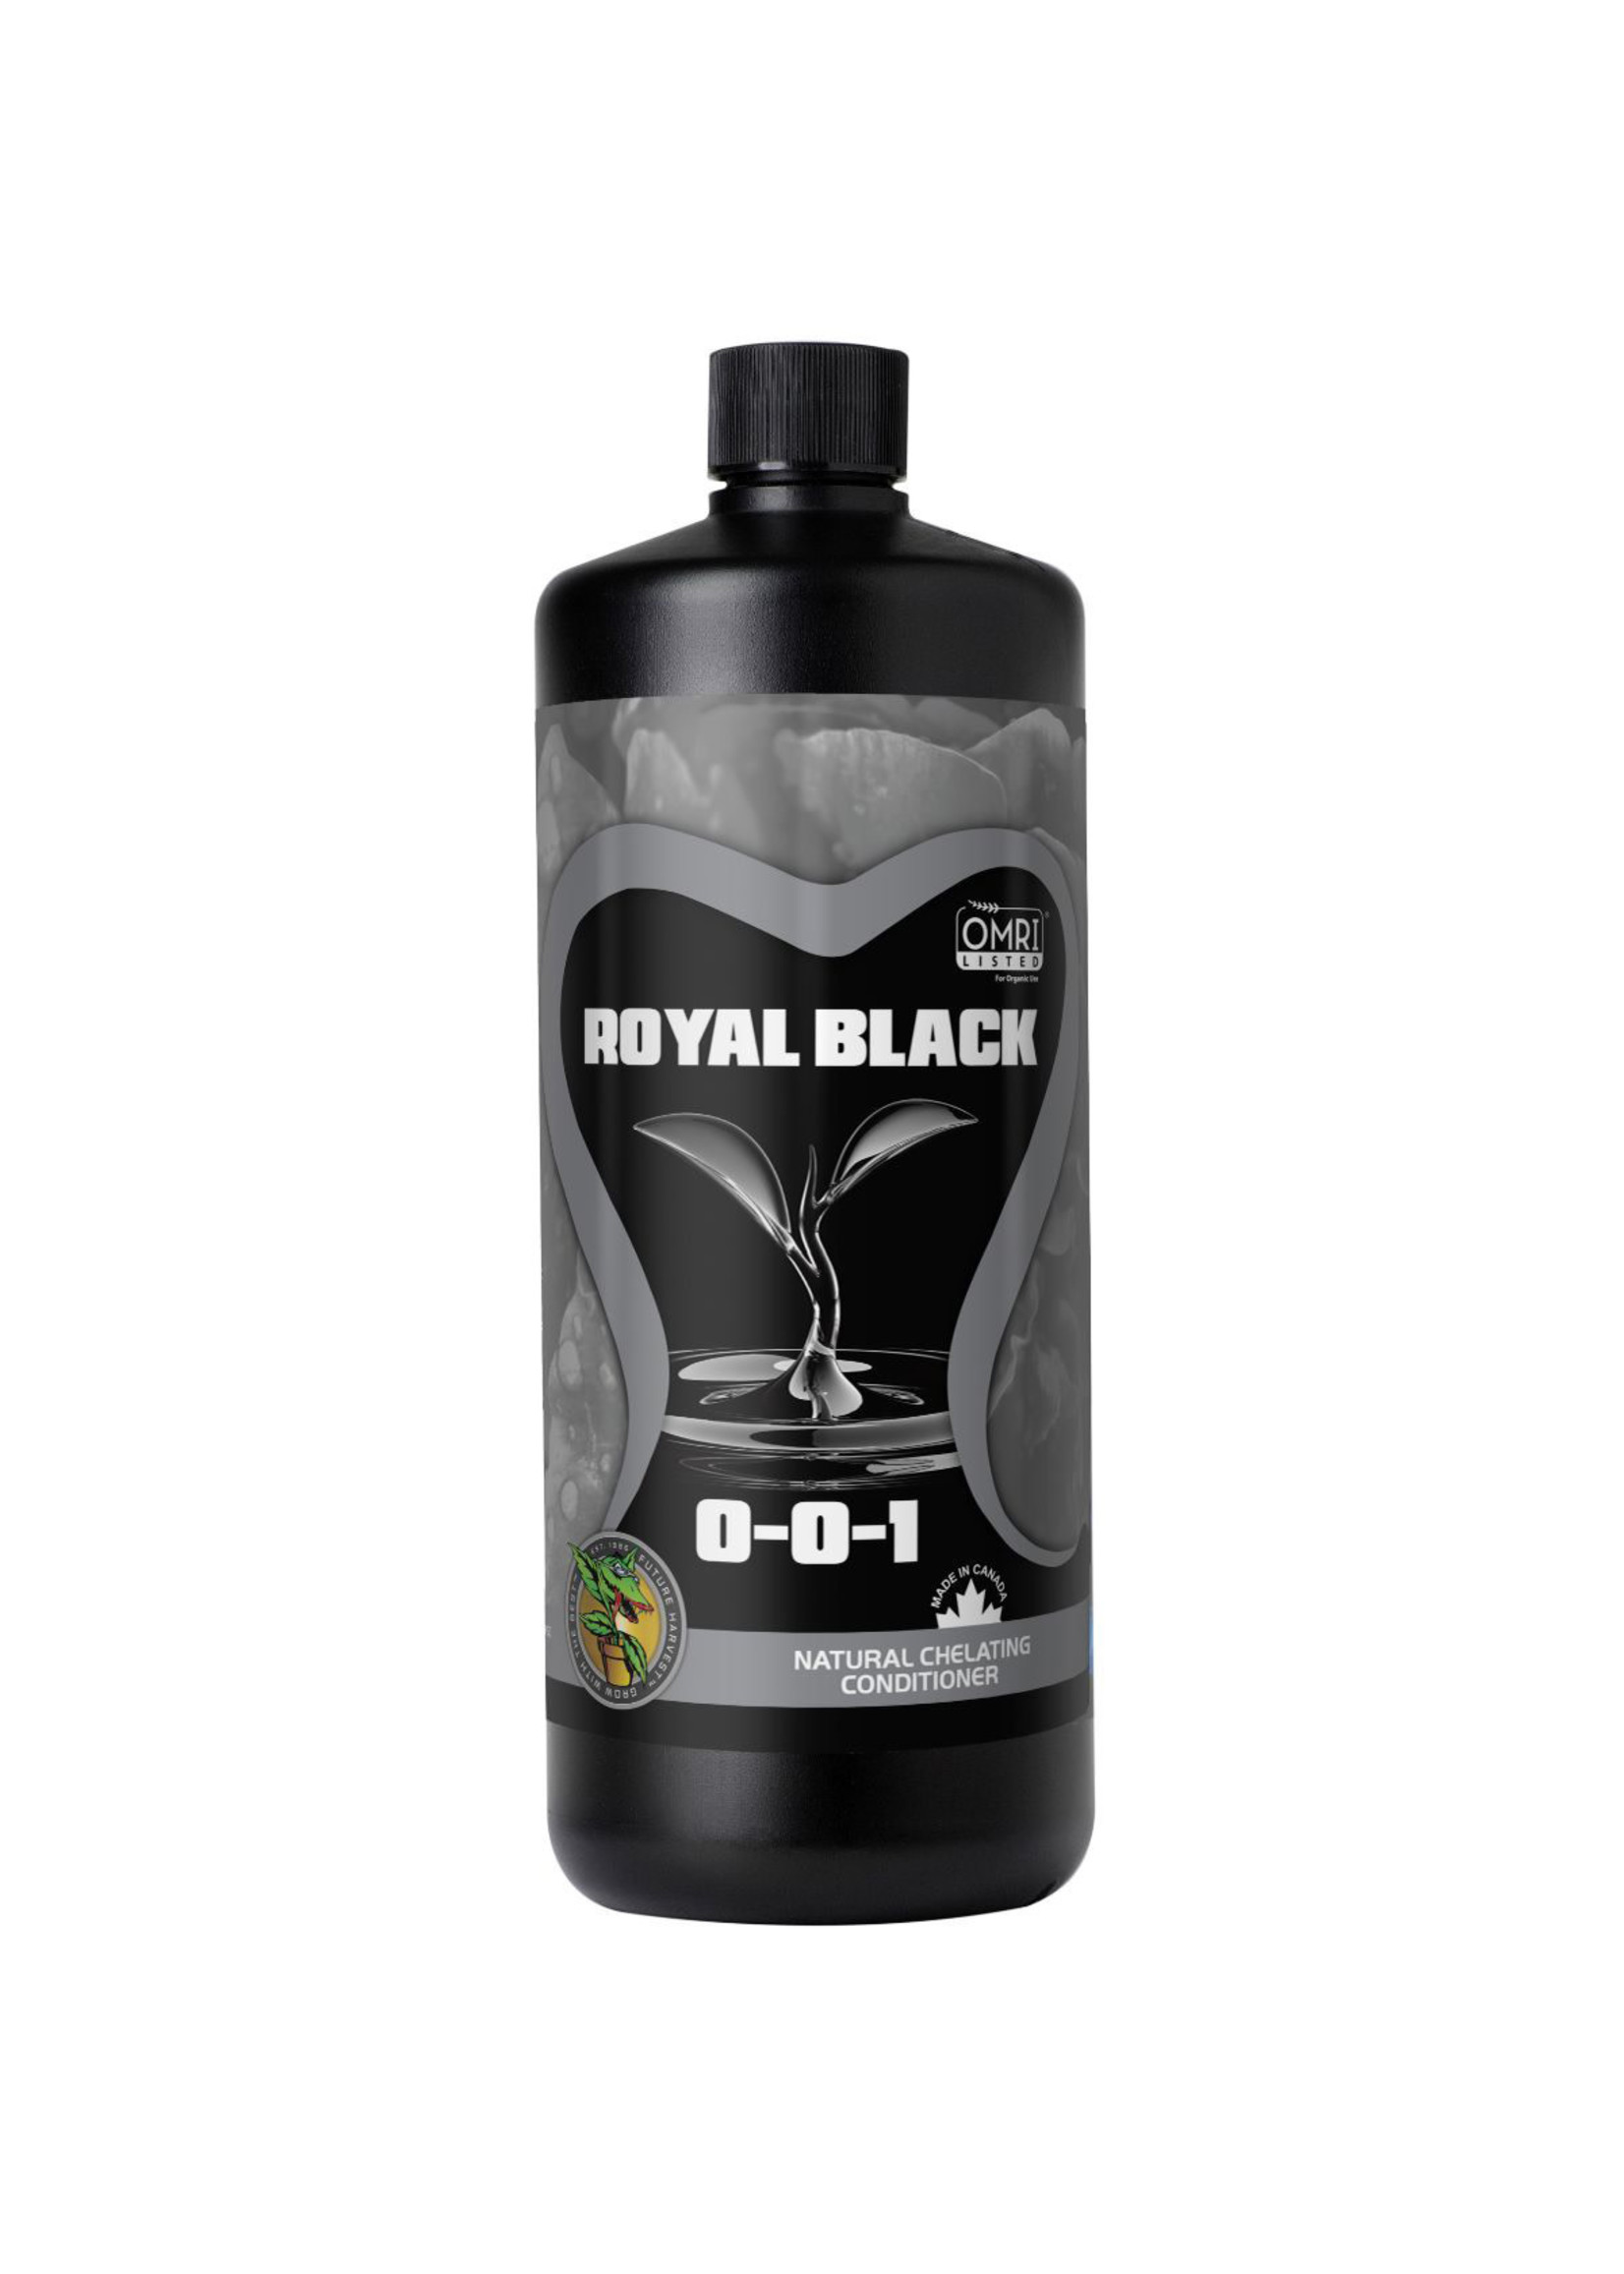 Future Harvest Royal Black Humic Acid